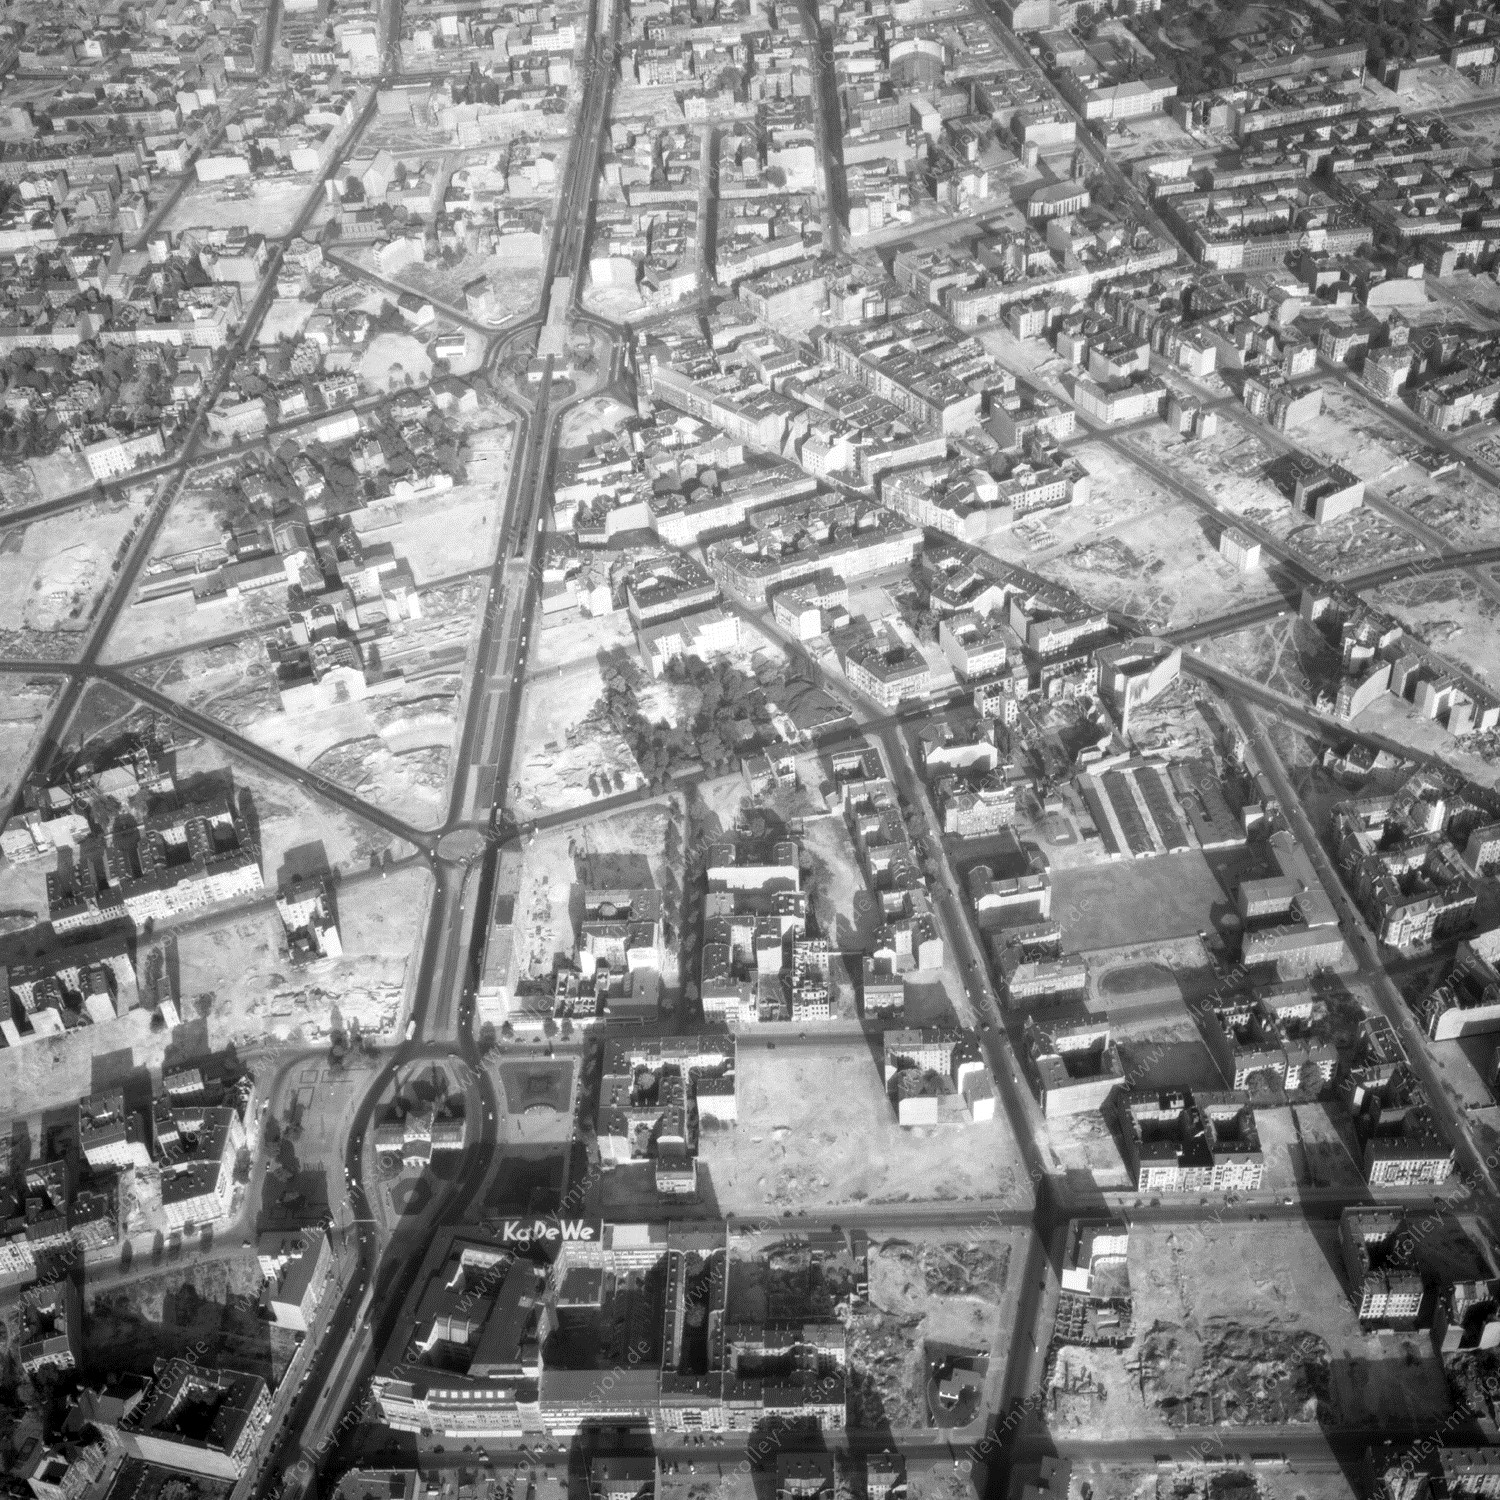 Alte Fotos und Luftbilder von Berlin - Luftbildaufnahme Nr. 09 - Historische Luftaufnahmen von West-Berlin aus dem Jahr 1954 - Flugstrecke Foxtrot